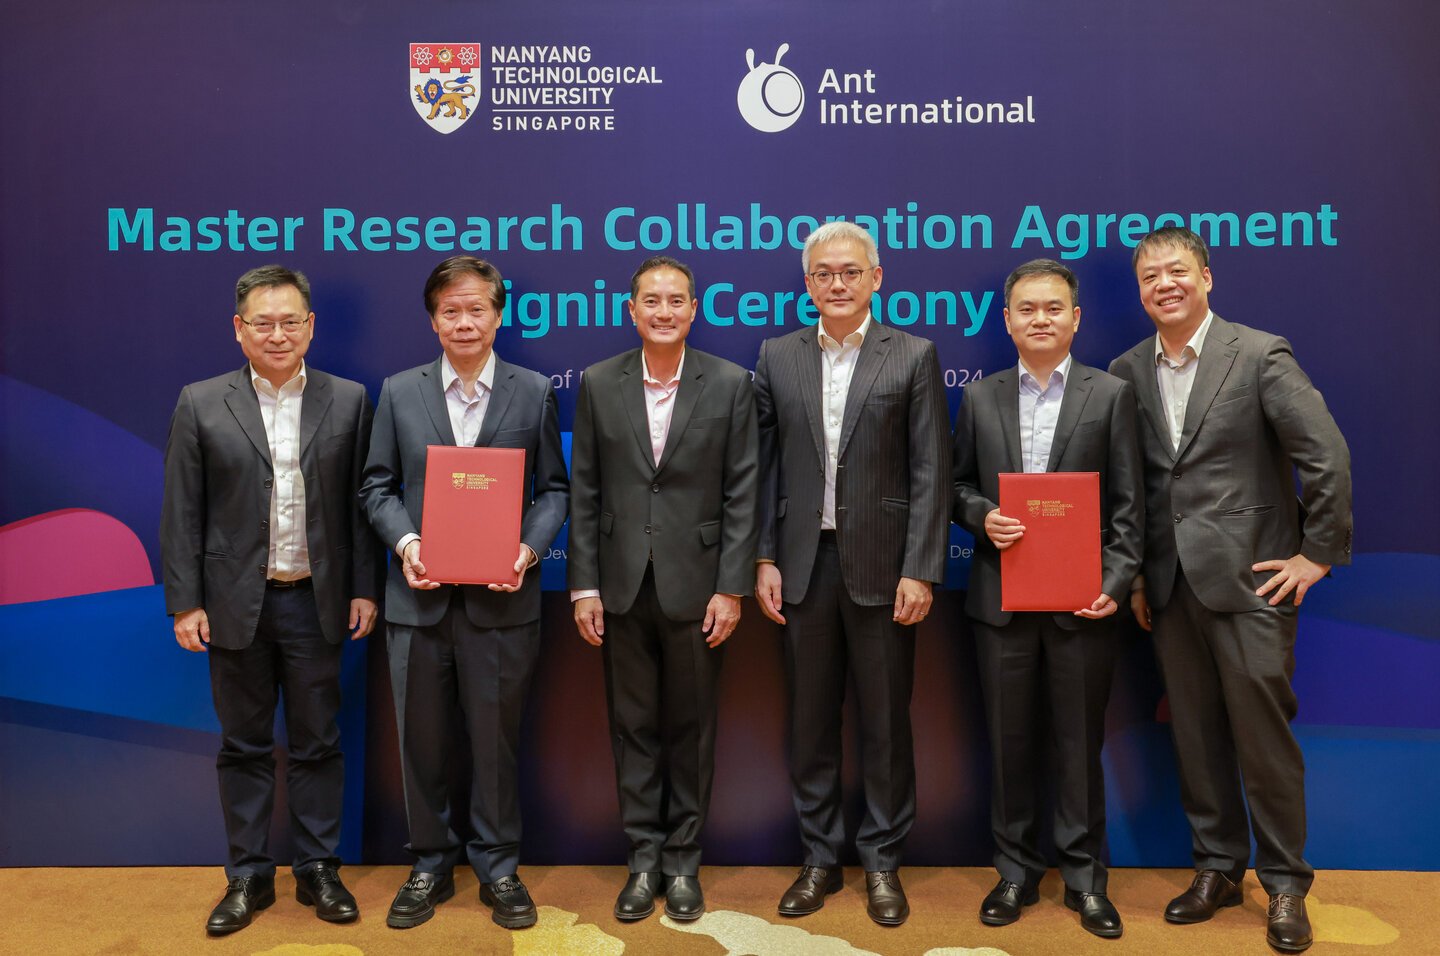 Professor Lam Kwok Yan, Professor Lam Khin Yong, Mr Tan Kiat How, Mr Yang Peng, Mr Jerry Yin and Dr Duan Pu